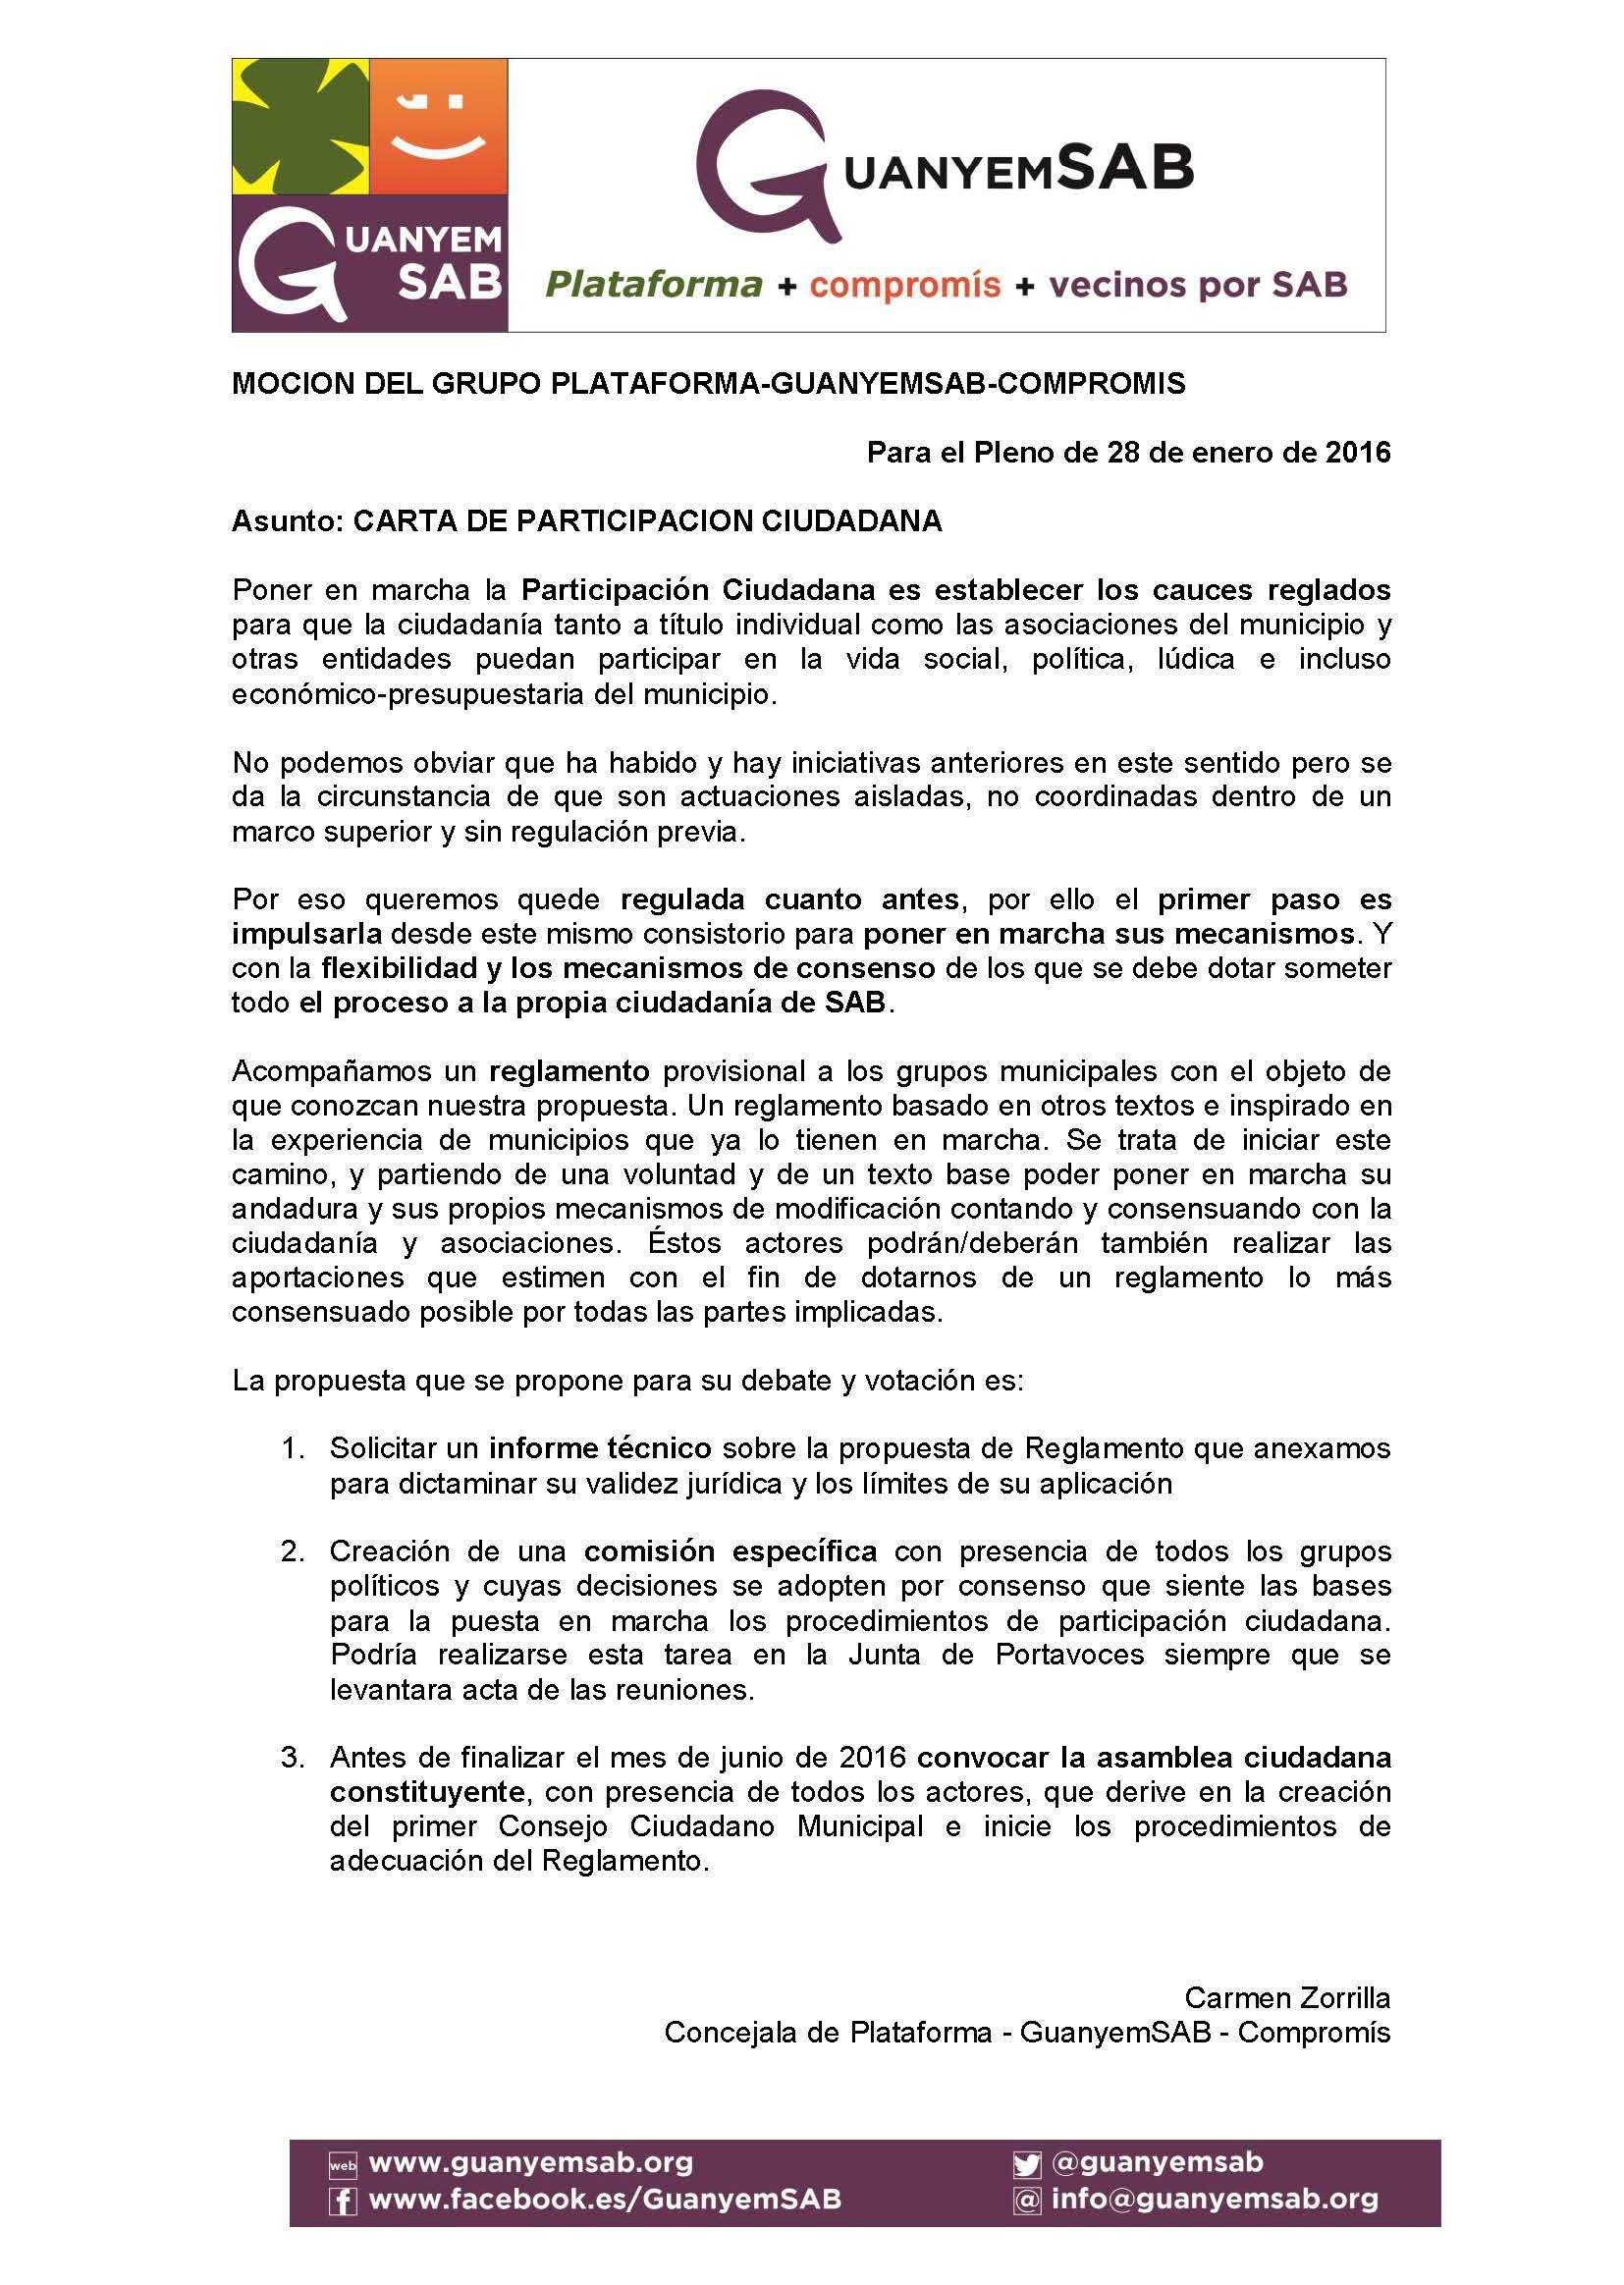 4 - MOCION CARTA DE PARTICIPACION CIUDADANA